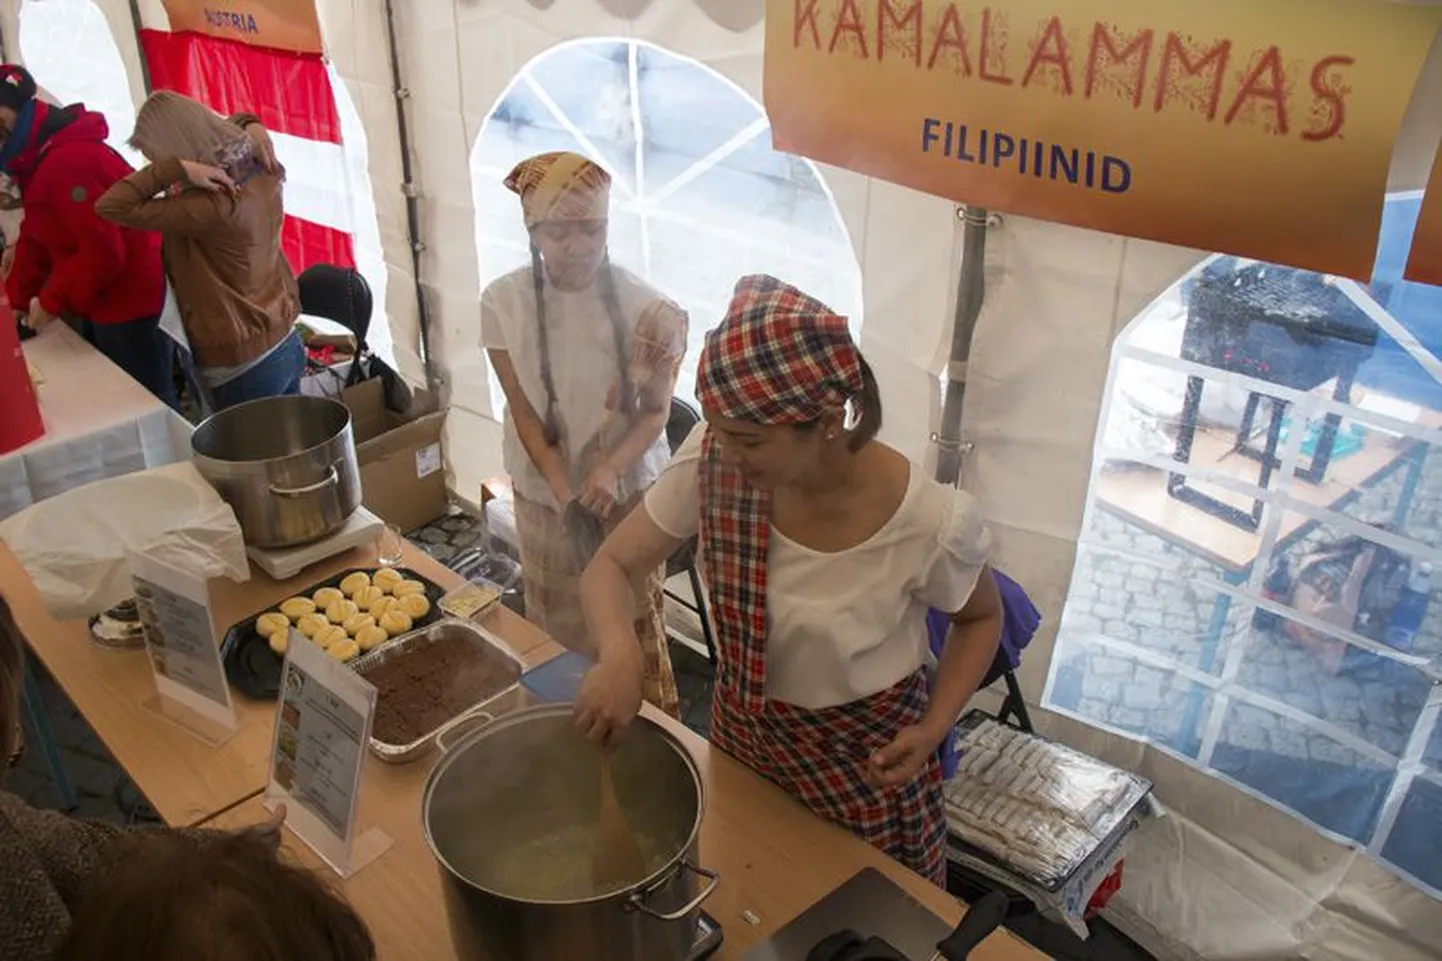 Filipiinlannad tutvustasid esimesel Kamalambal oma toidutraditsioone ja köögikombeid.